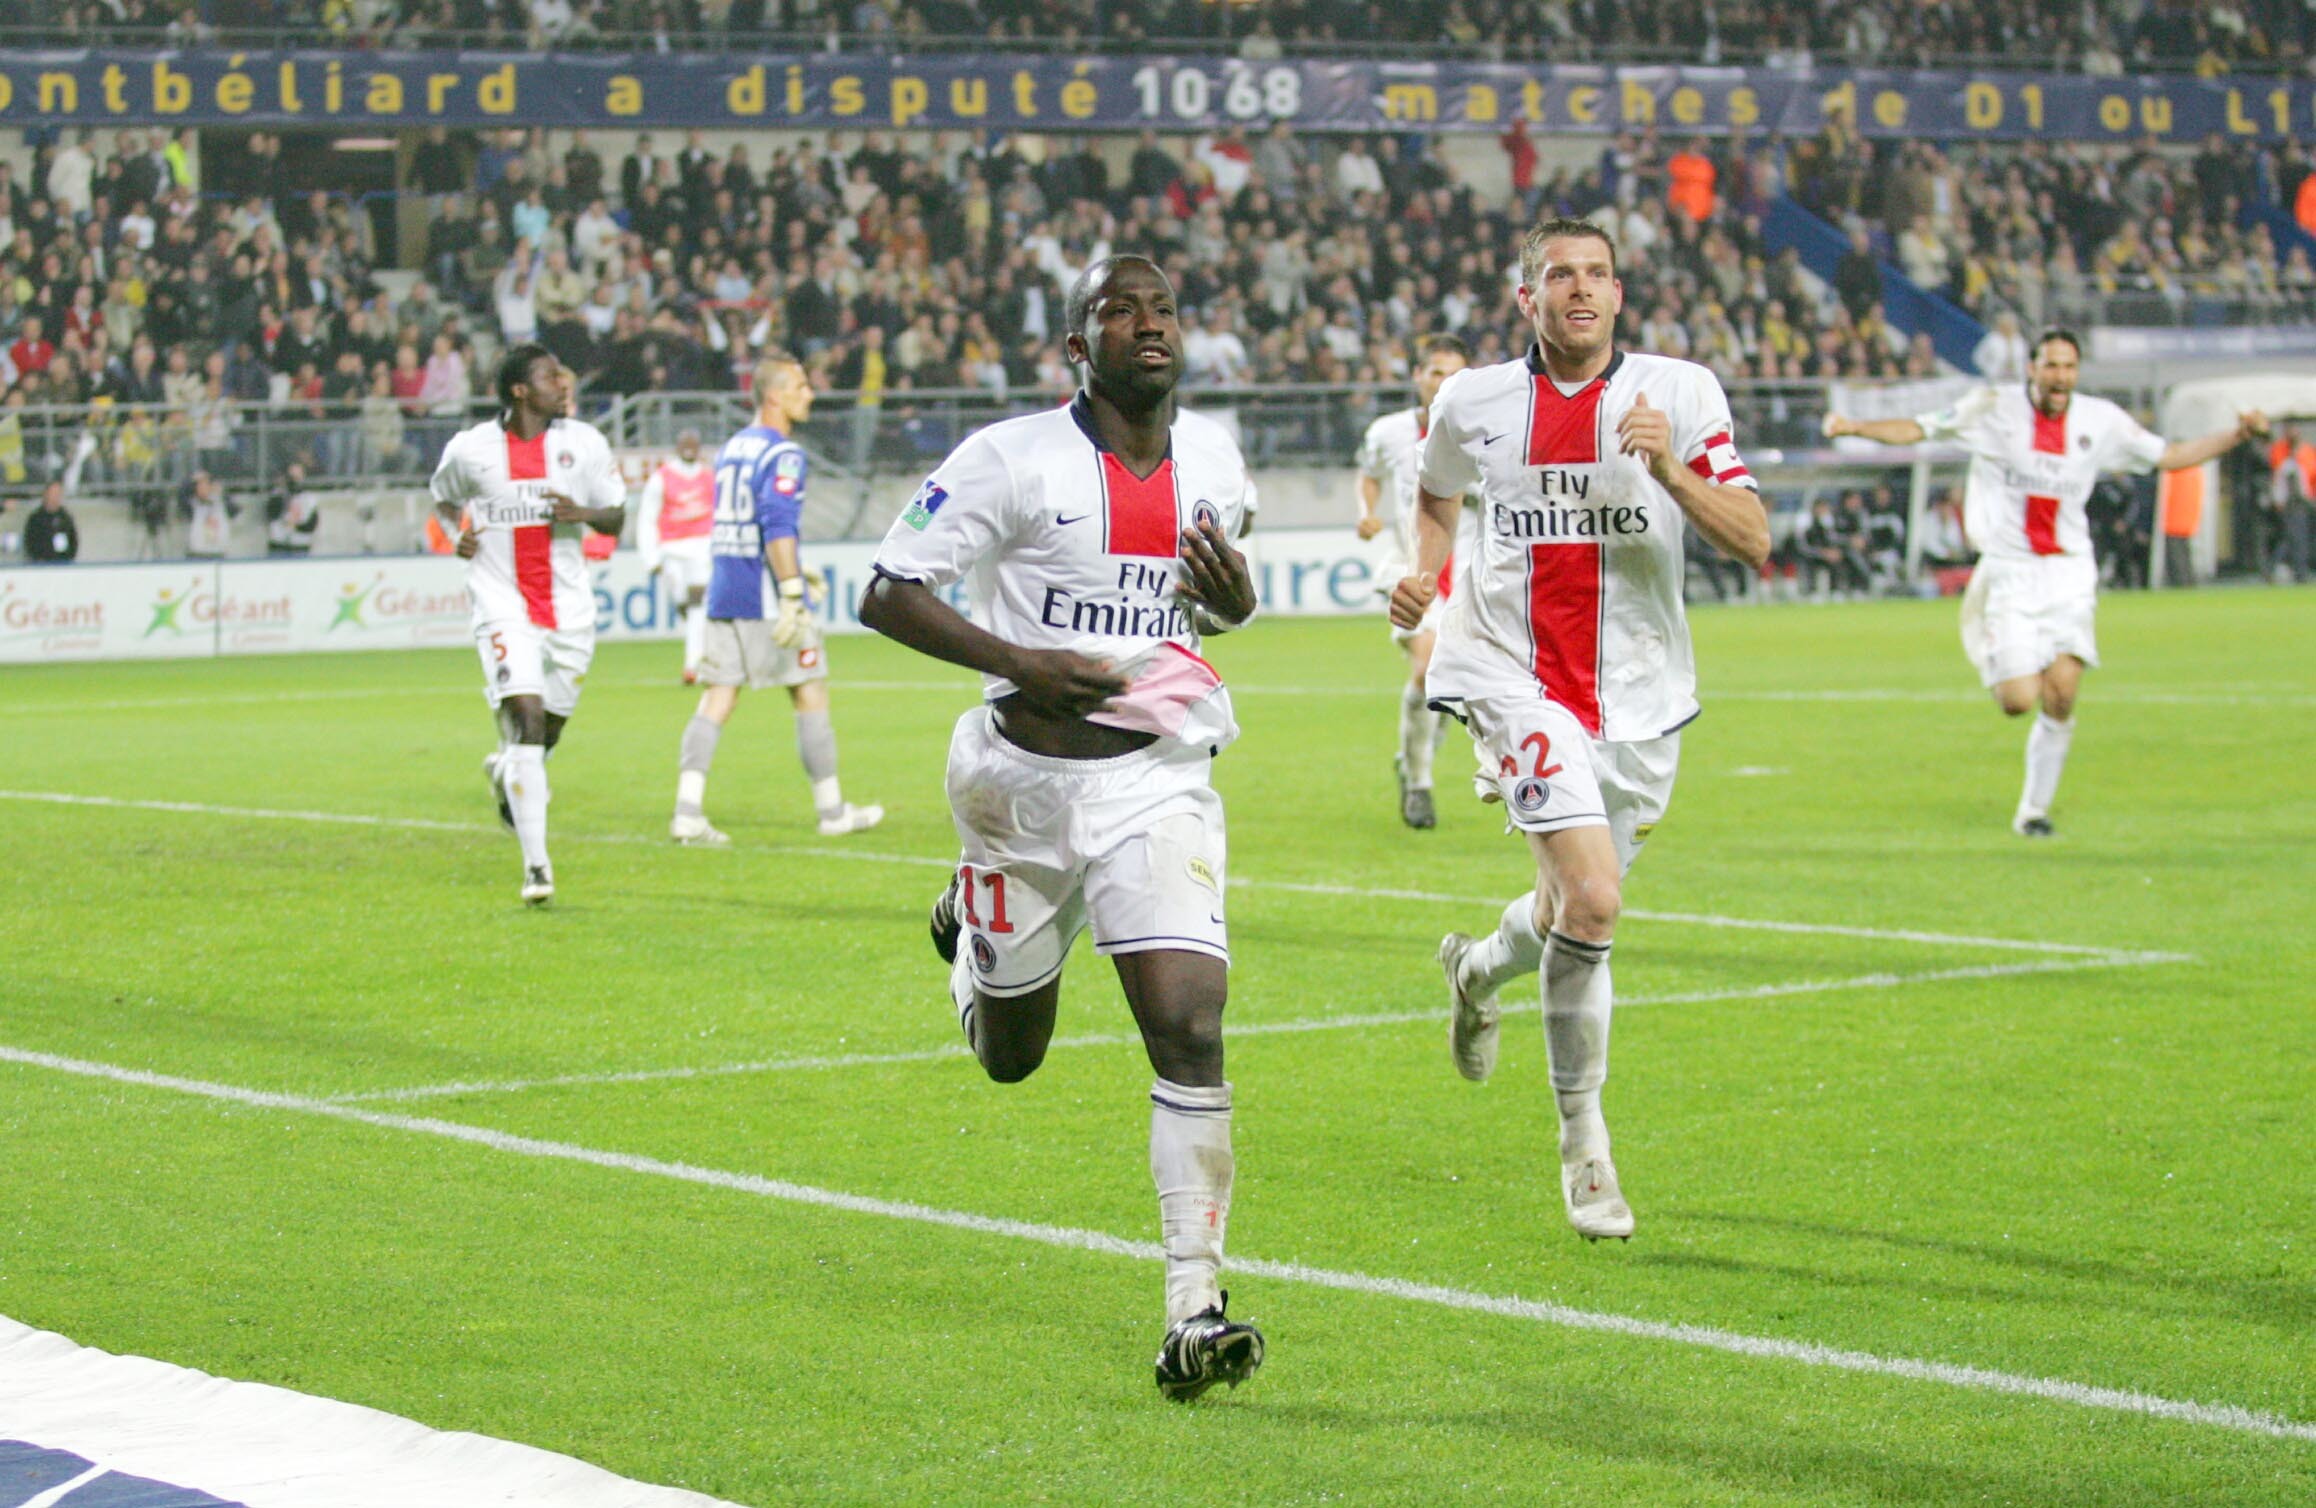 Le jour où Amara Diané sauvait la place du PSG en Ligue 1